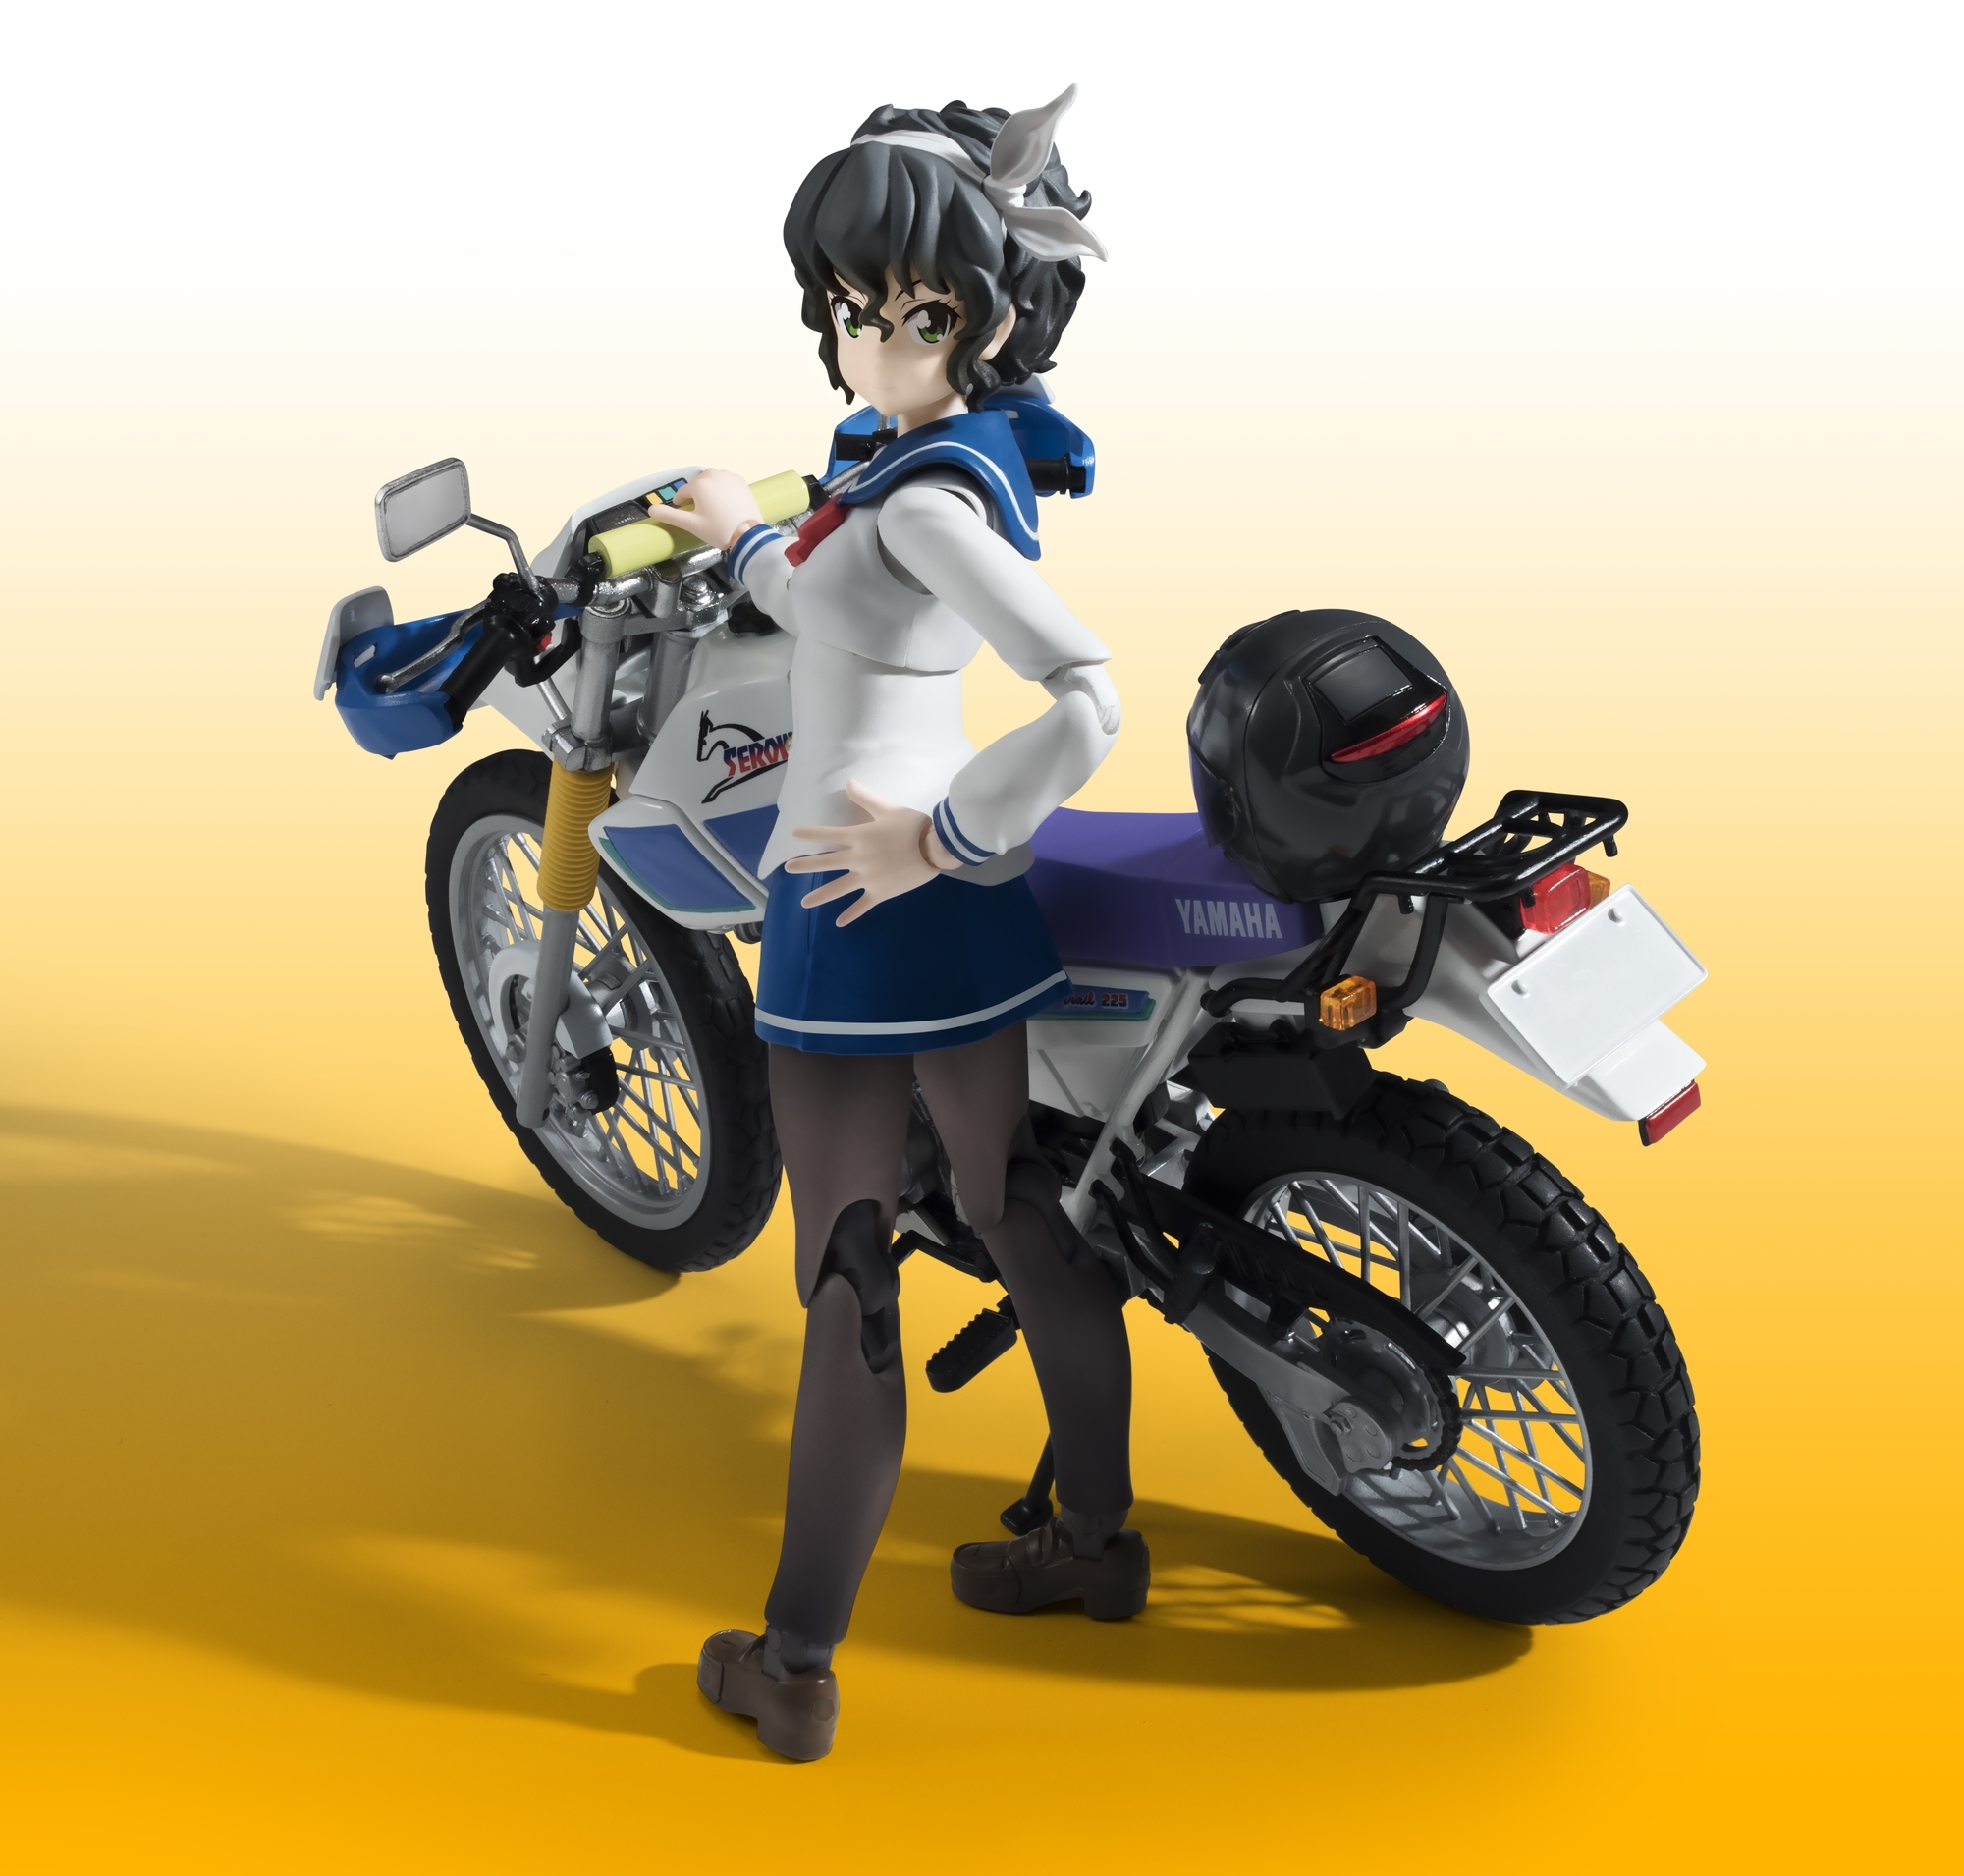 日常系バイクアニメ ばくおん より天野恩紗 あまの おんさ と愛車 Serow225wが立体化 株式会社バンダイ ネット戦略室のプレスリリース